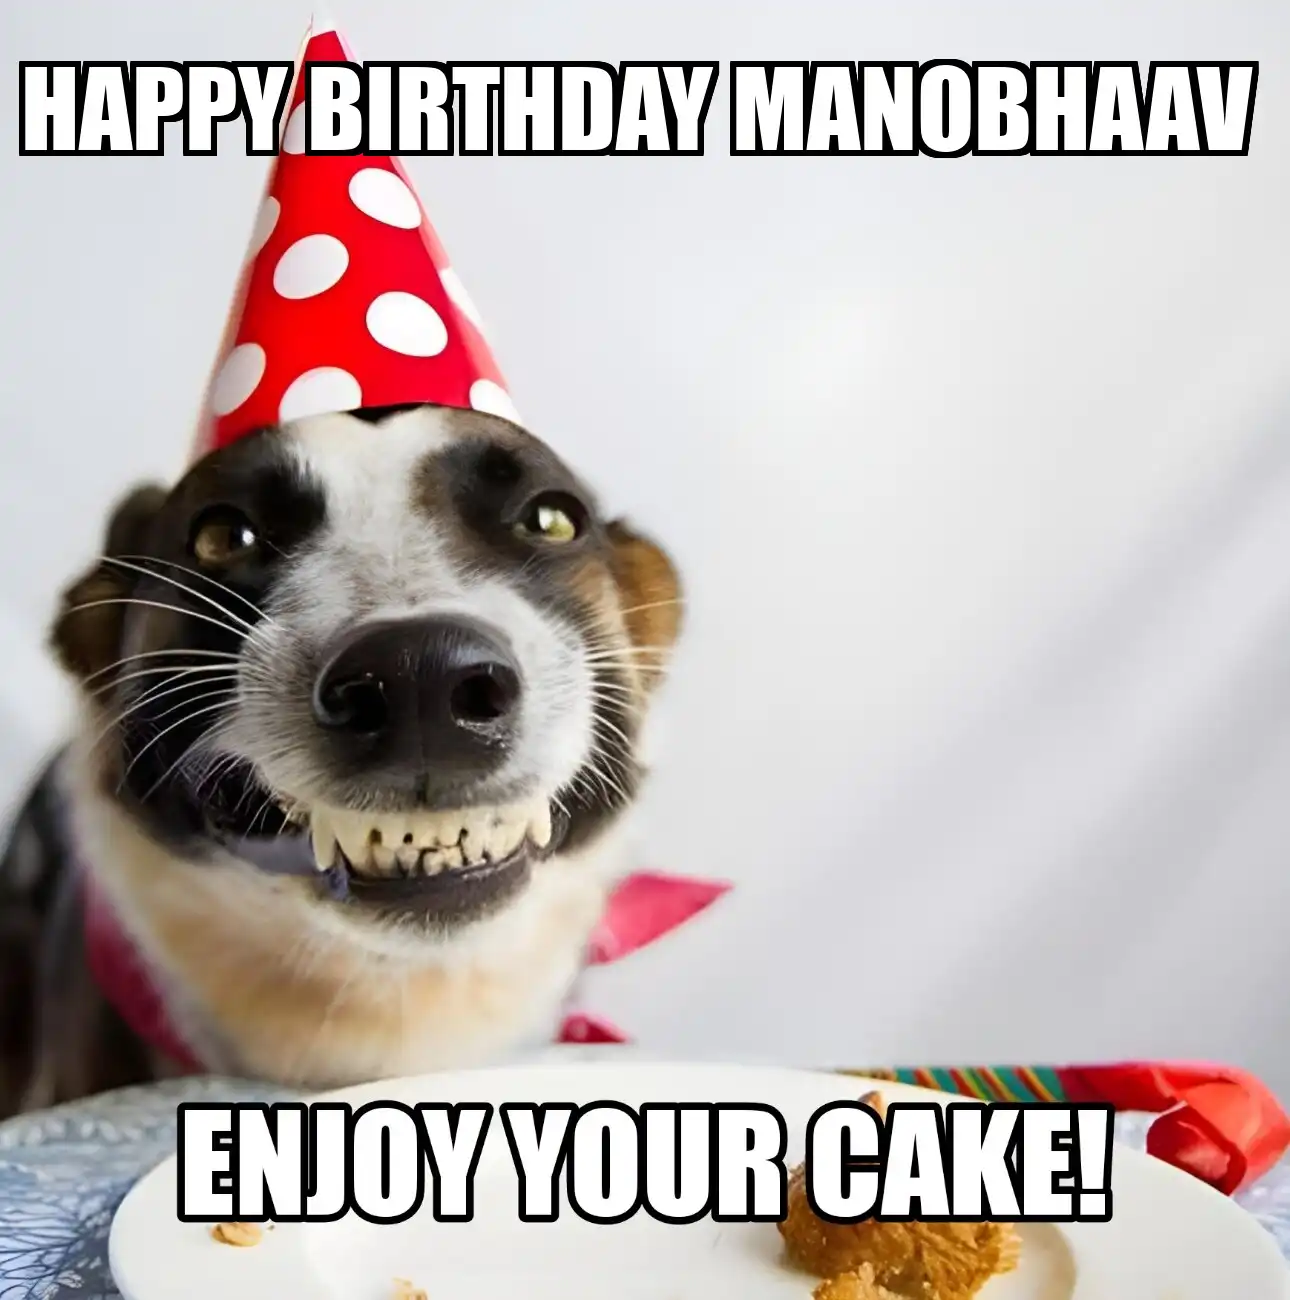 Happy Birthday Manobhaav Enjoy Your Cake Dog Meme